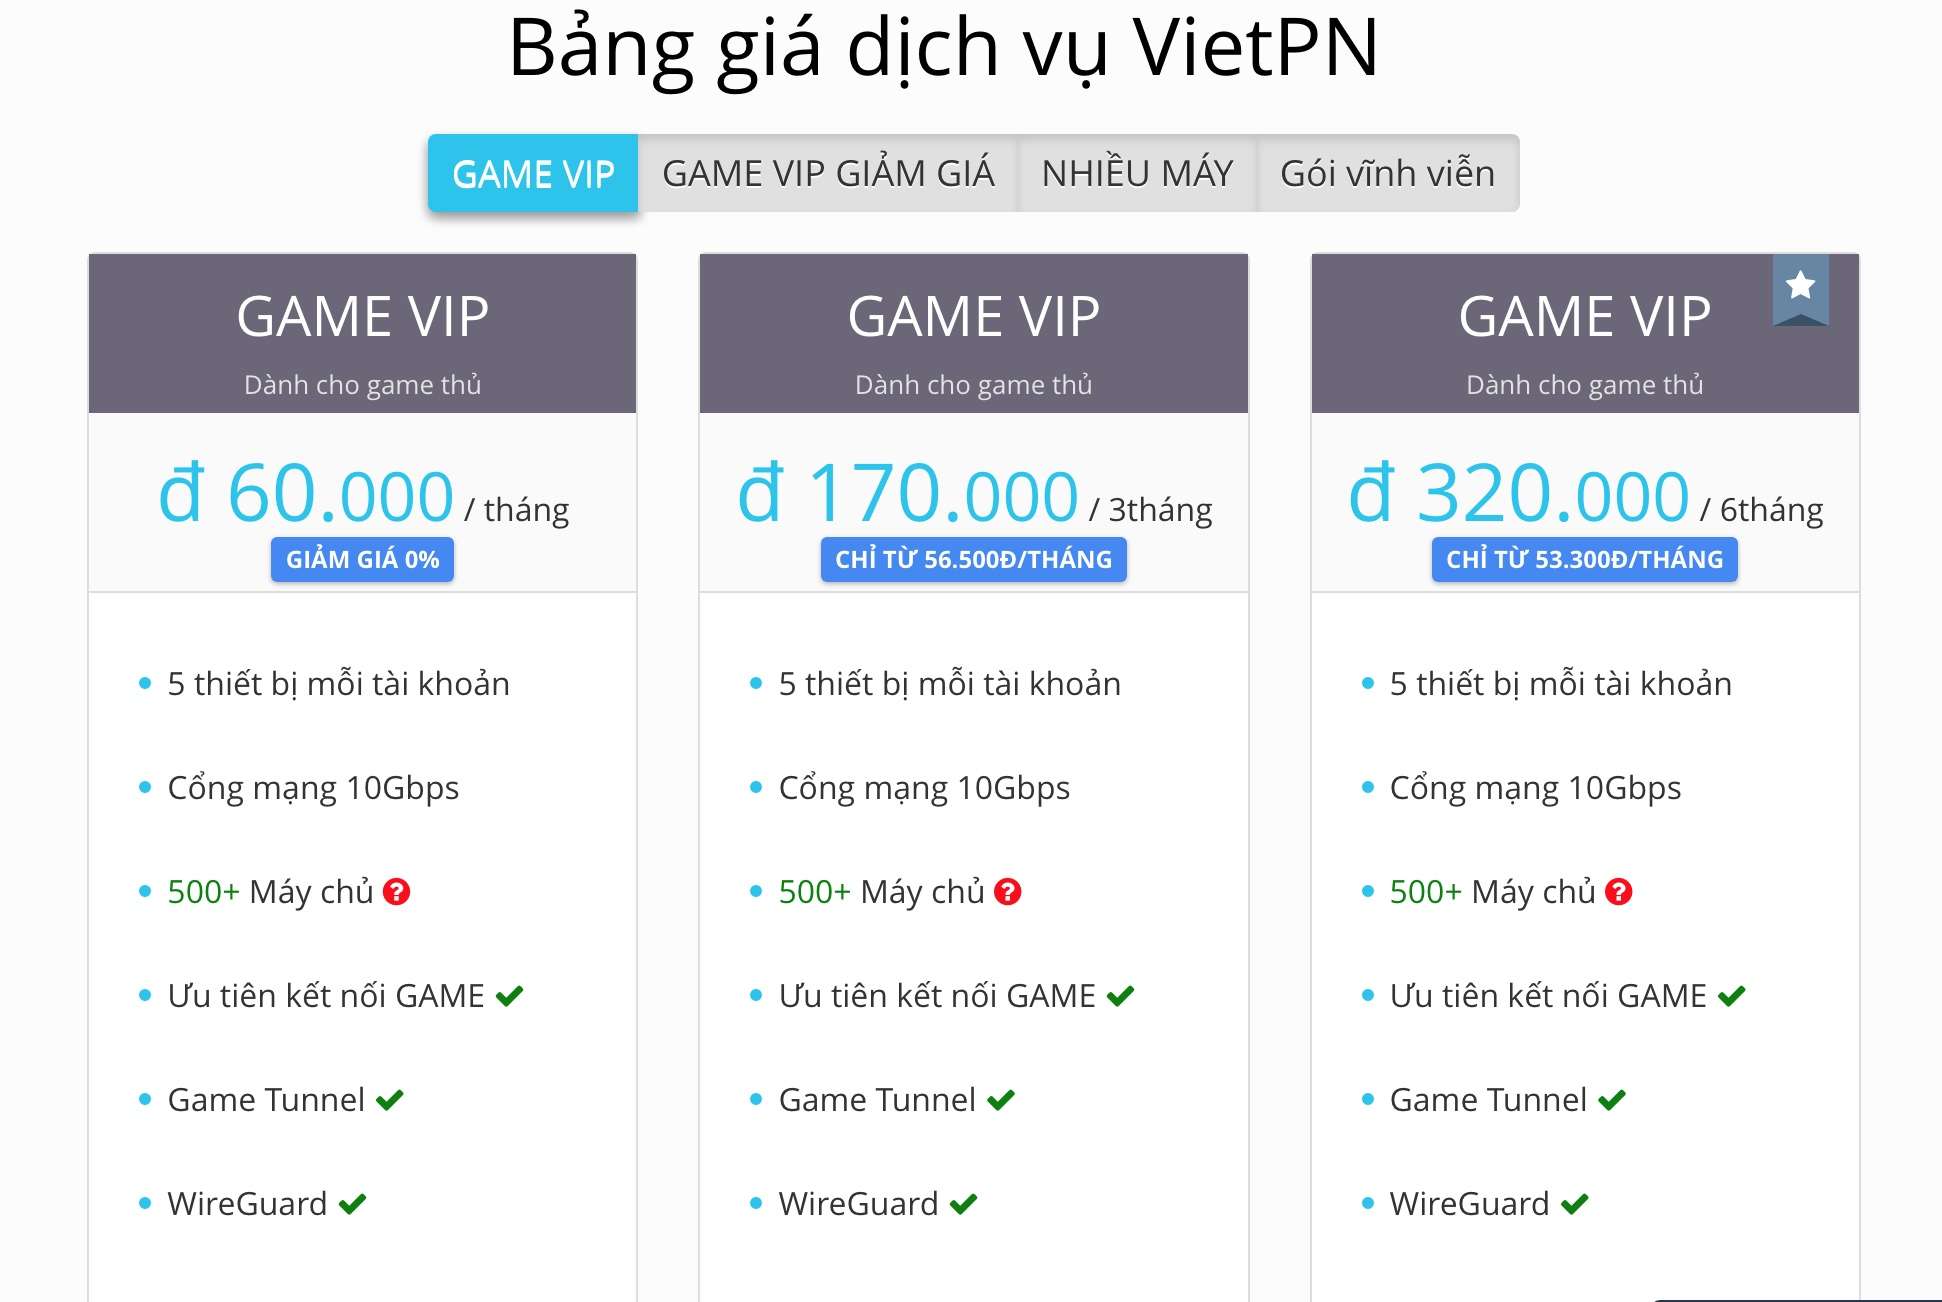 Bảng giá game vip